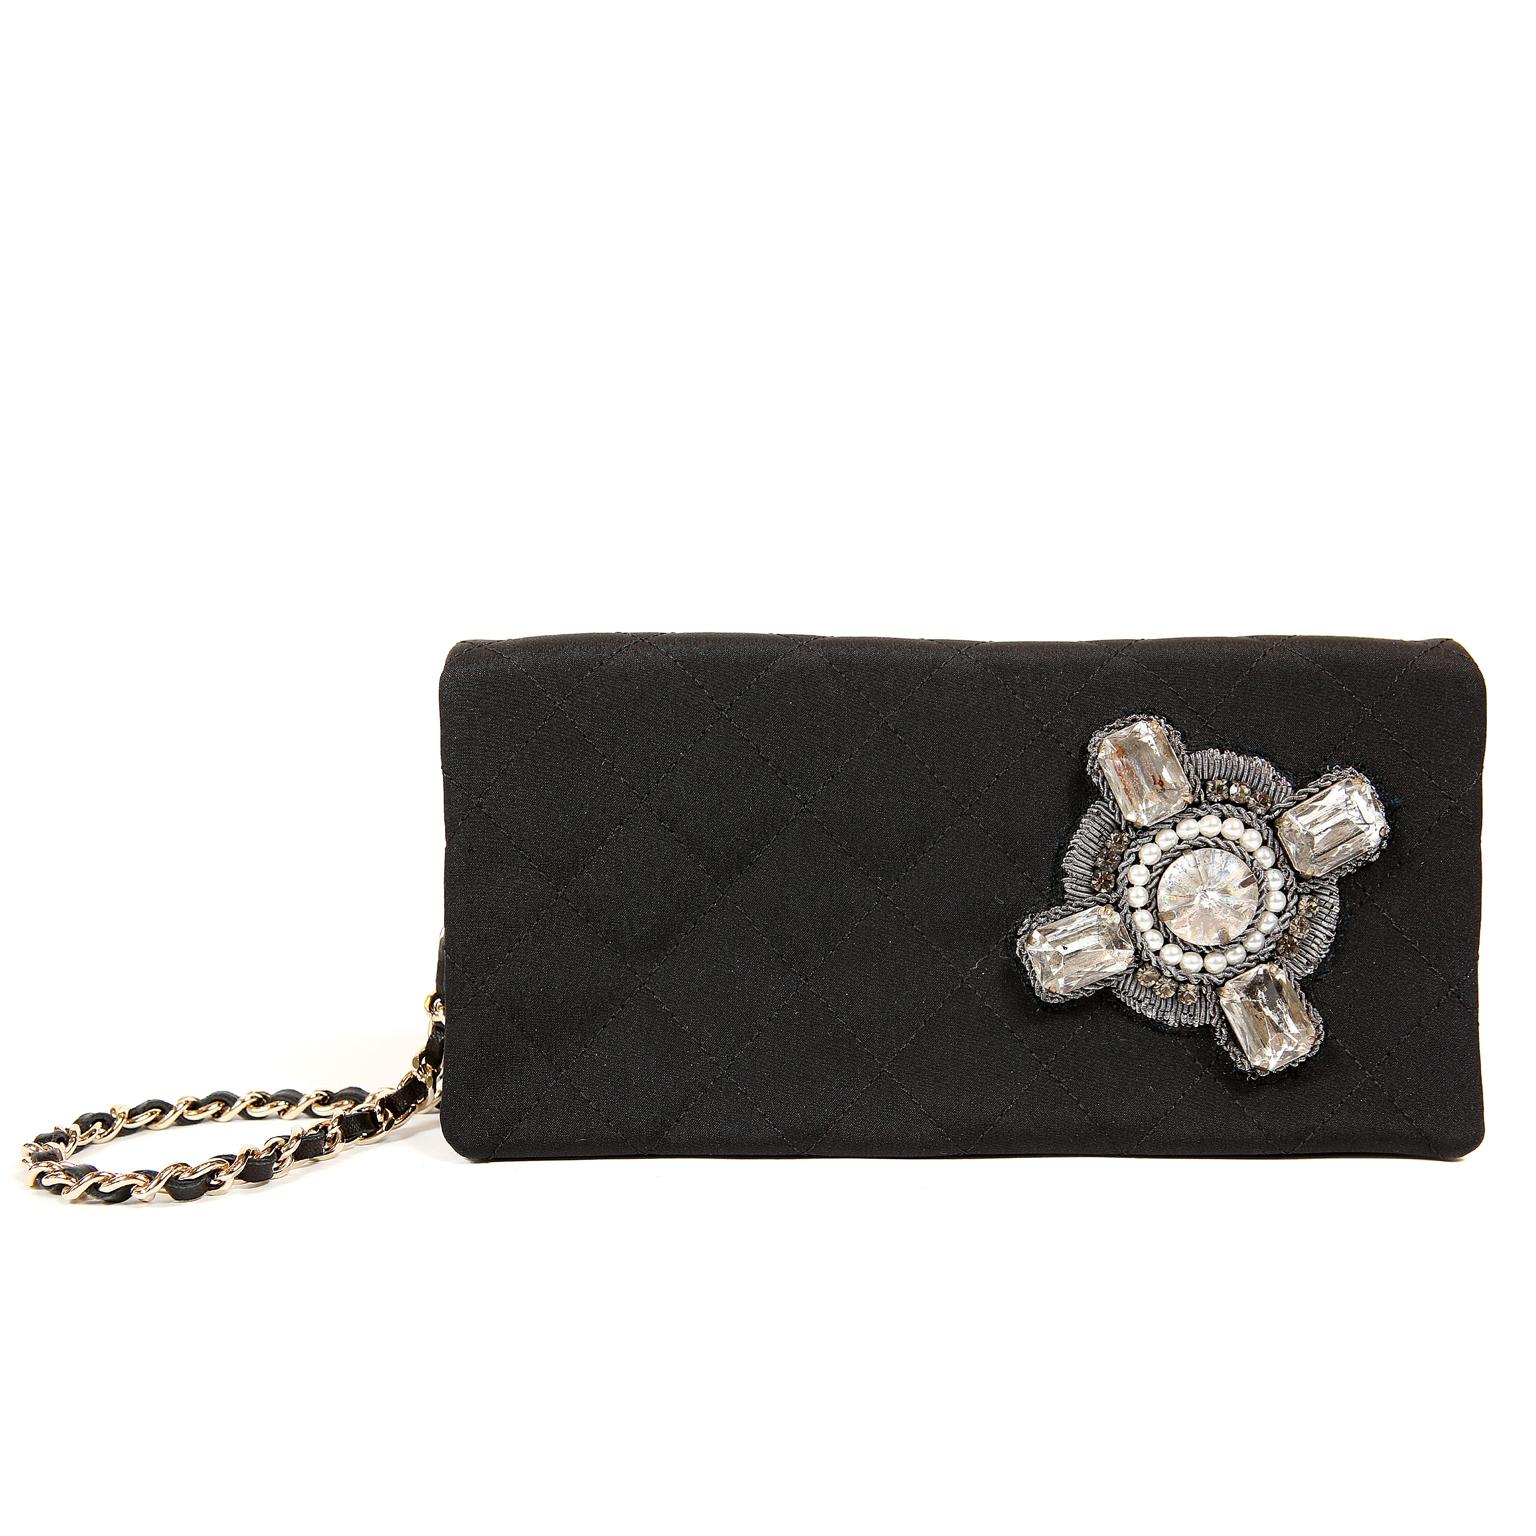 Chanel Black Fabric Crystal Embellished Evening Bag 5